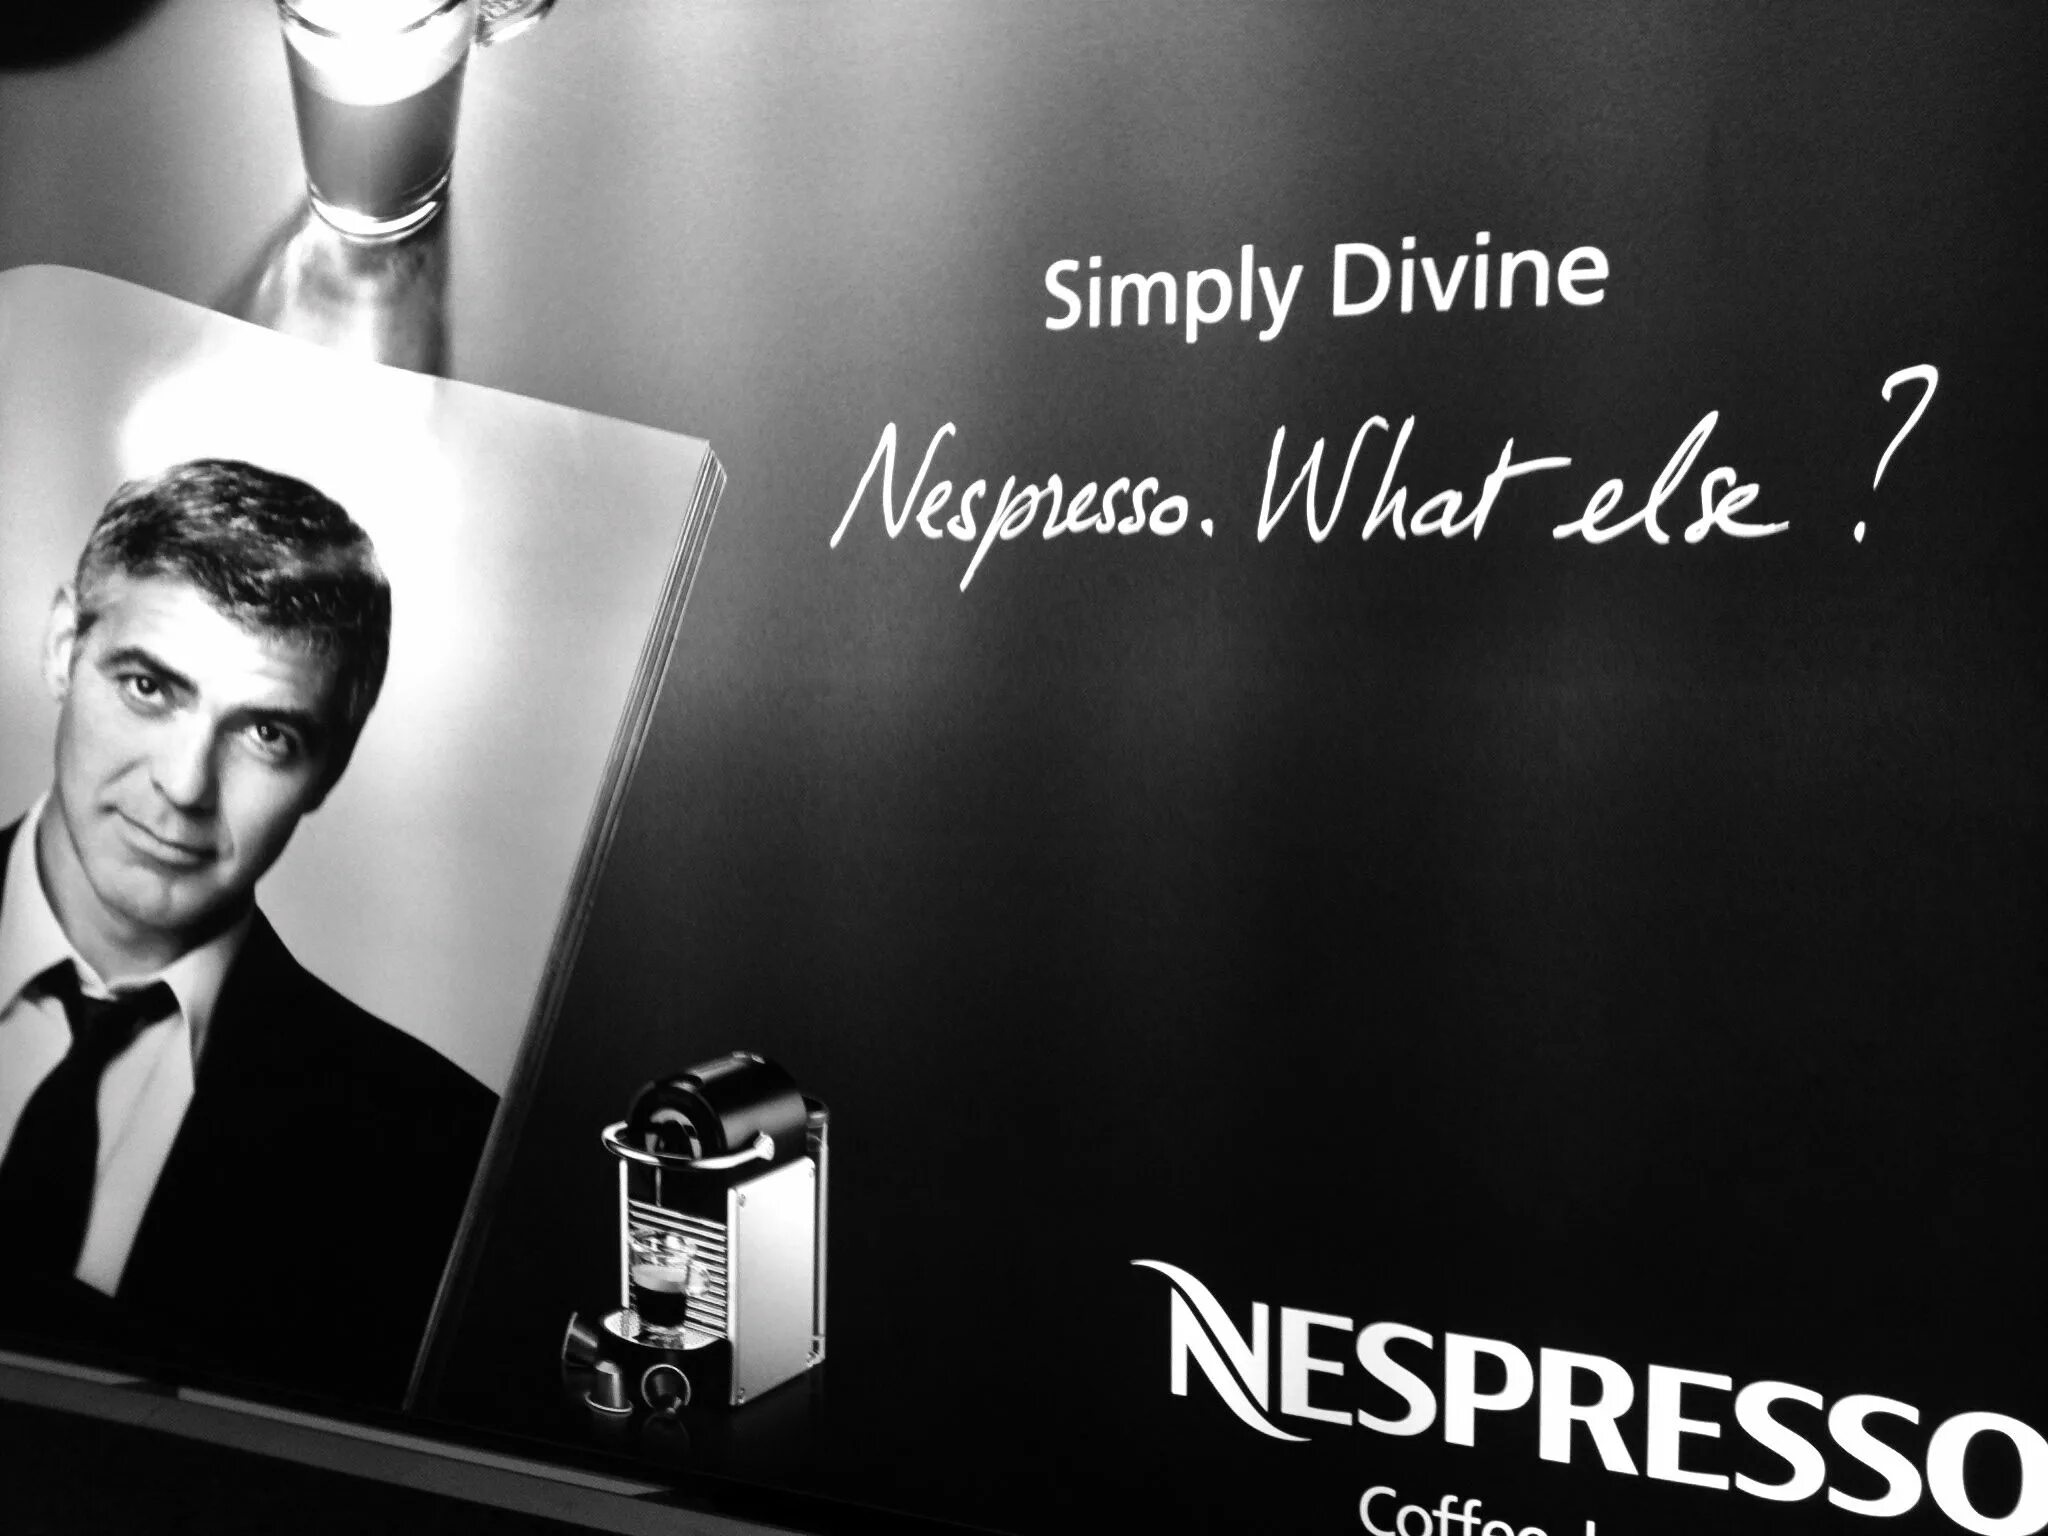 Джордж Клуни Nespresso. Nespresso 2006 Джордж Клуни. Реклама неспрессо с Джорджем Клуни. Неспрессо Клуни.